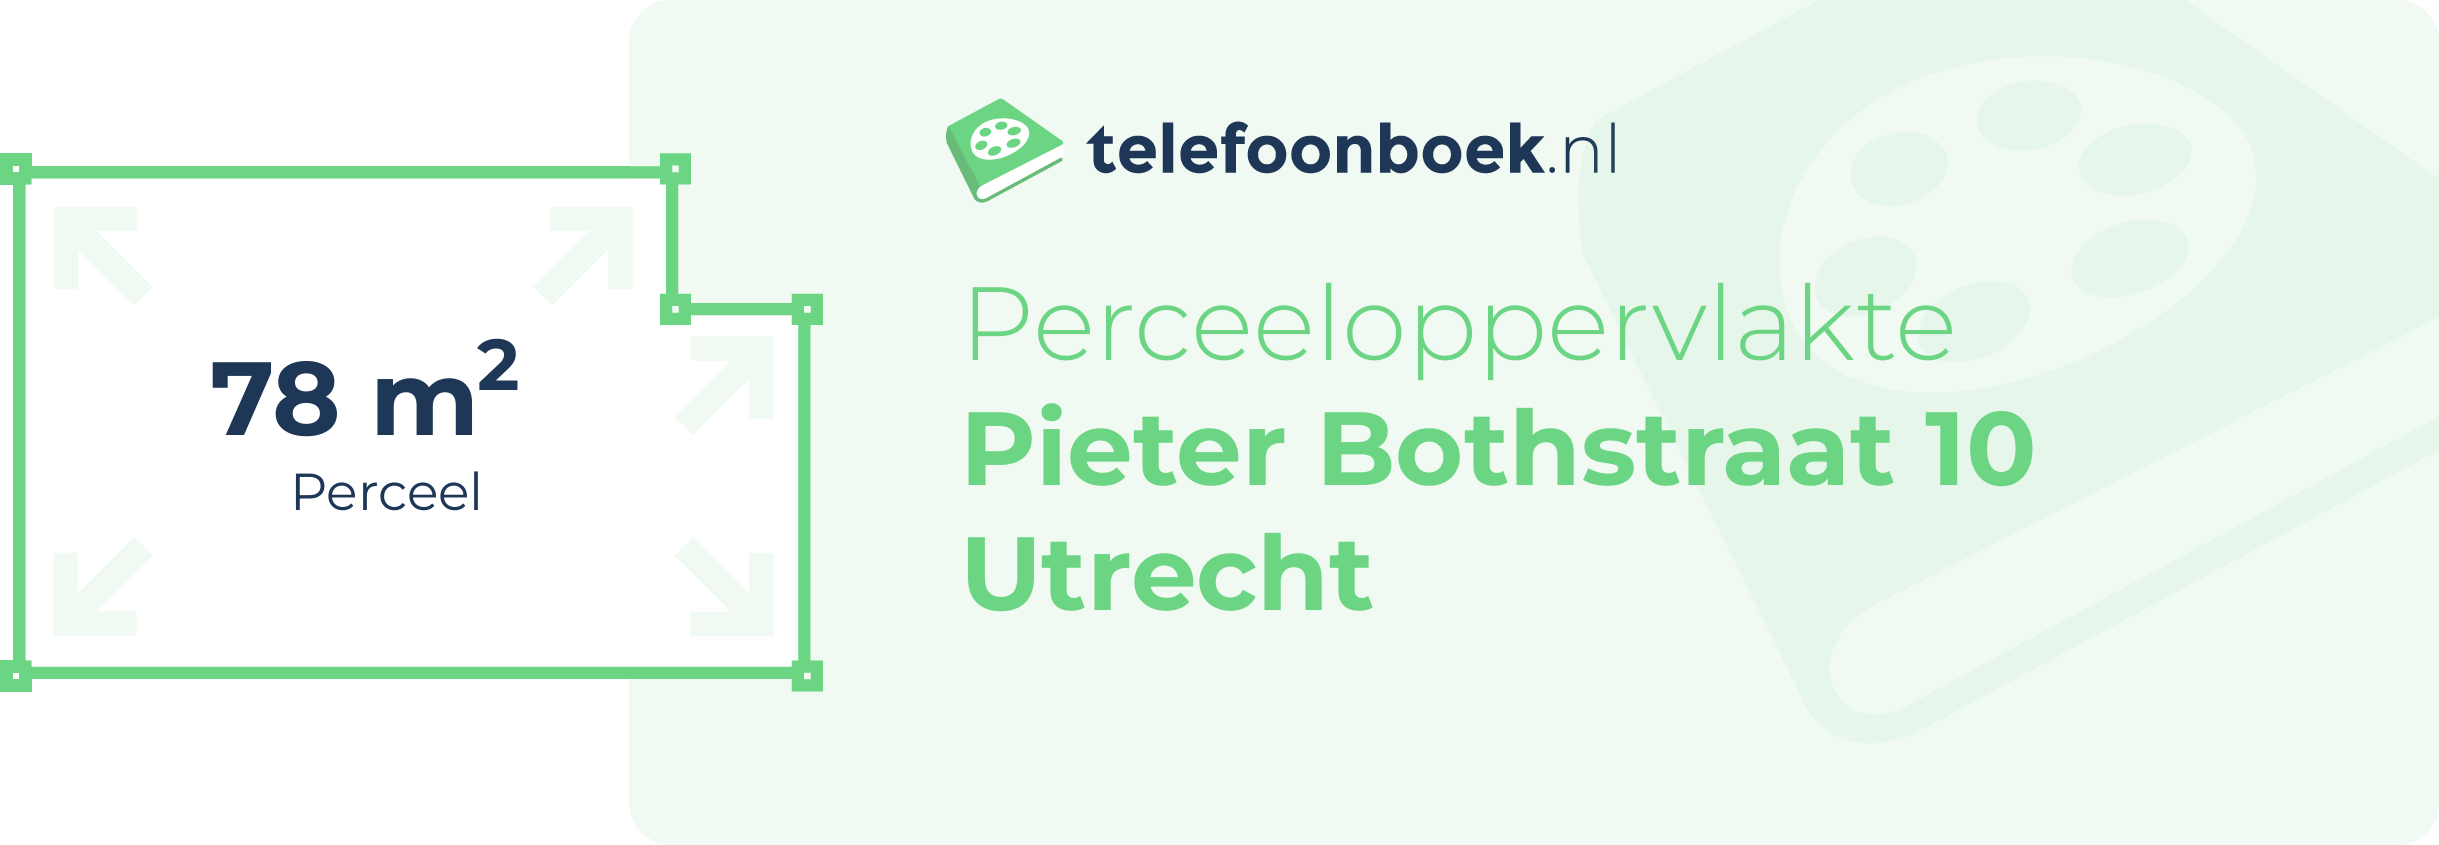 Perceeloppervlakte Pieter Bothstraat 10 Utrecht